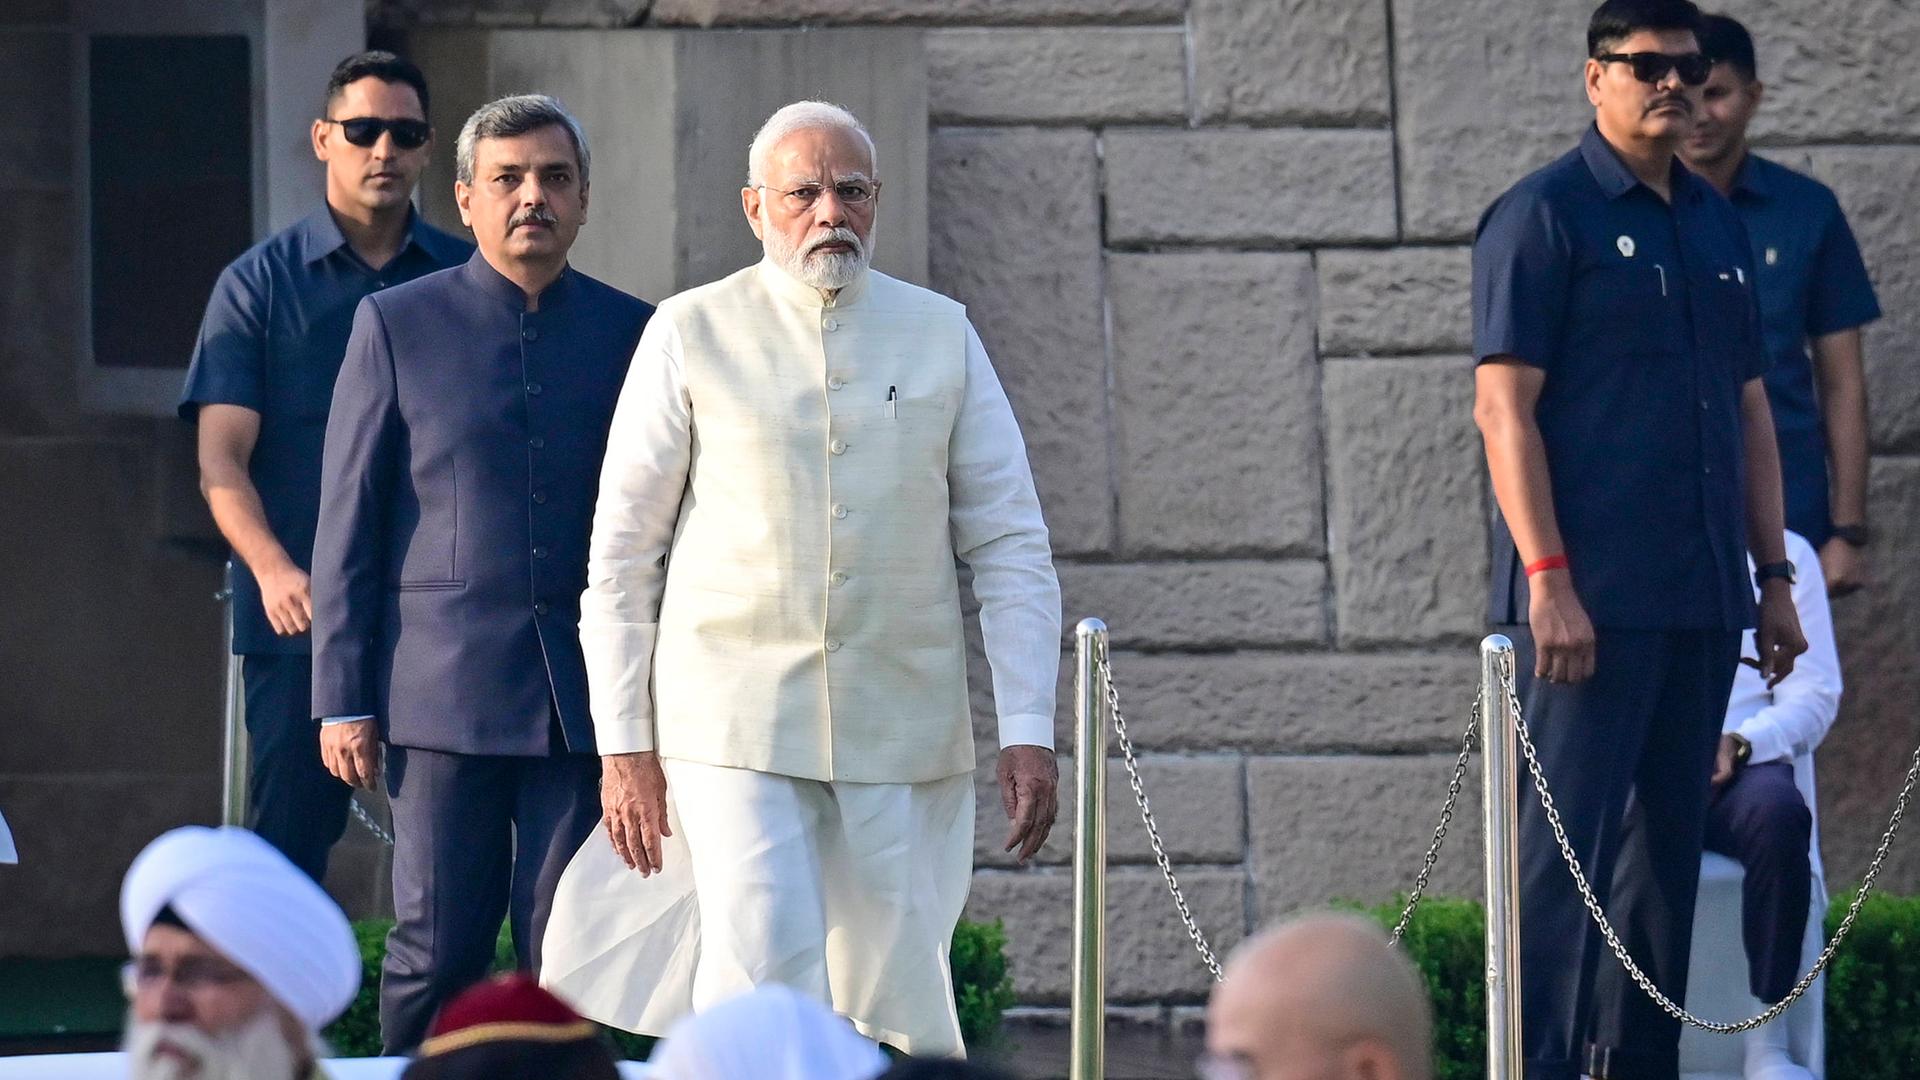 Der indische Premierminister Narendra Modi schreitet in einem weißem Gewand einen markierten Weg ab. Hinter stehen ihm mehrere Sicherheitskräfte.